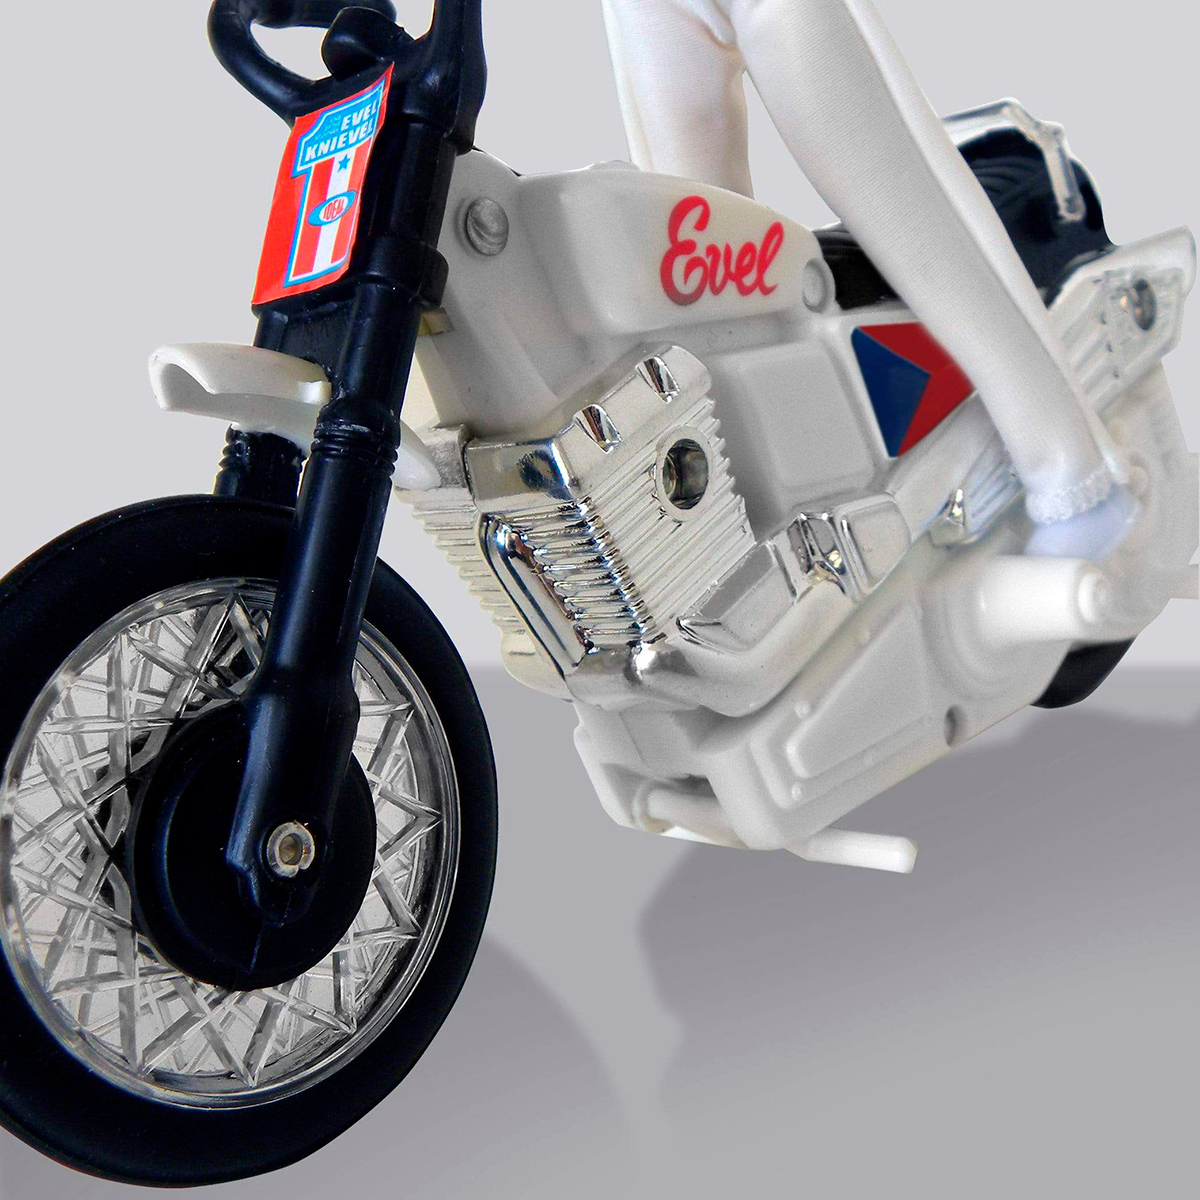 El juguete de Evel Knievel con su moto de acrobacias es pura nostalgia para los estadounidenses